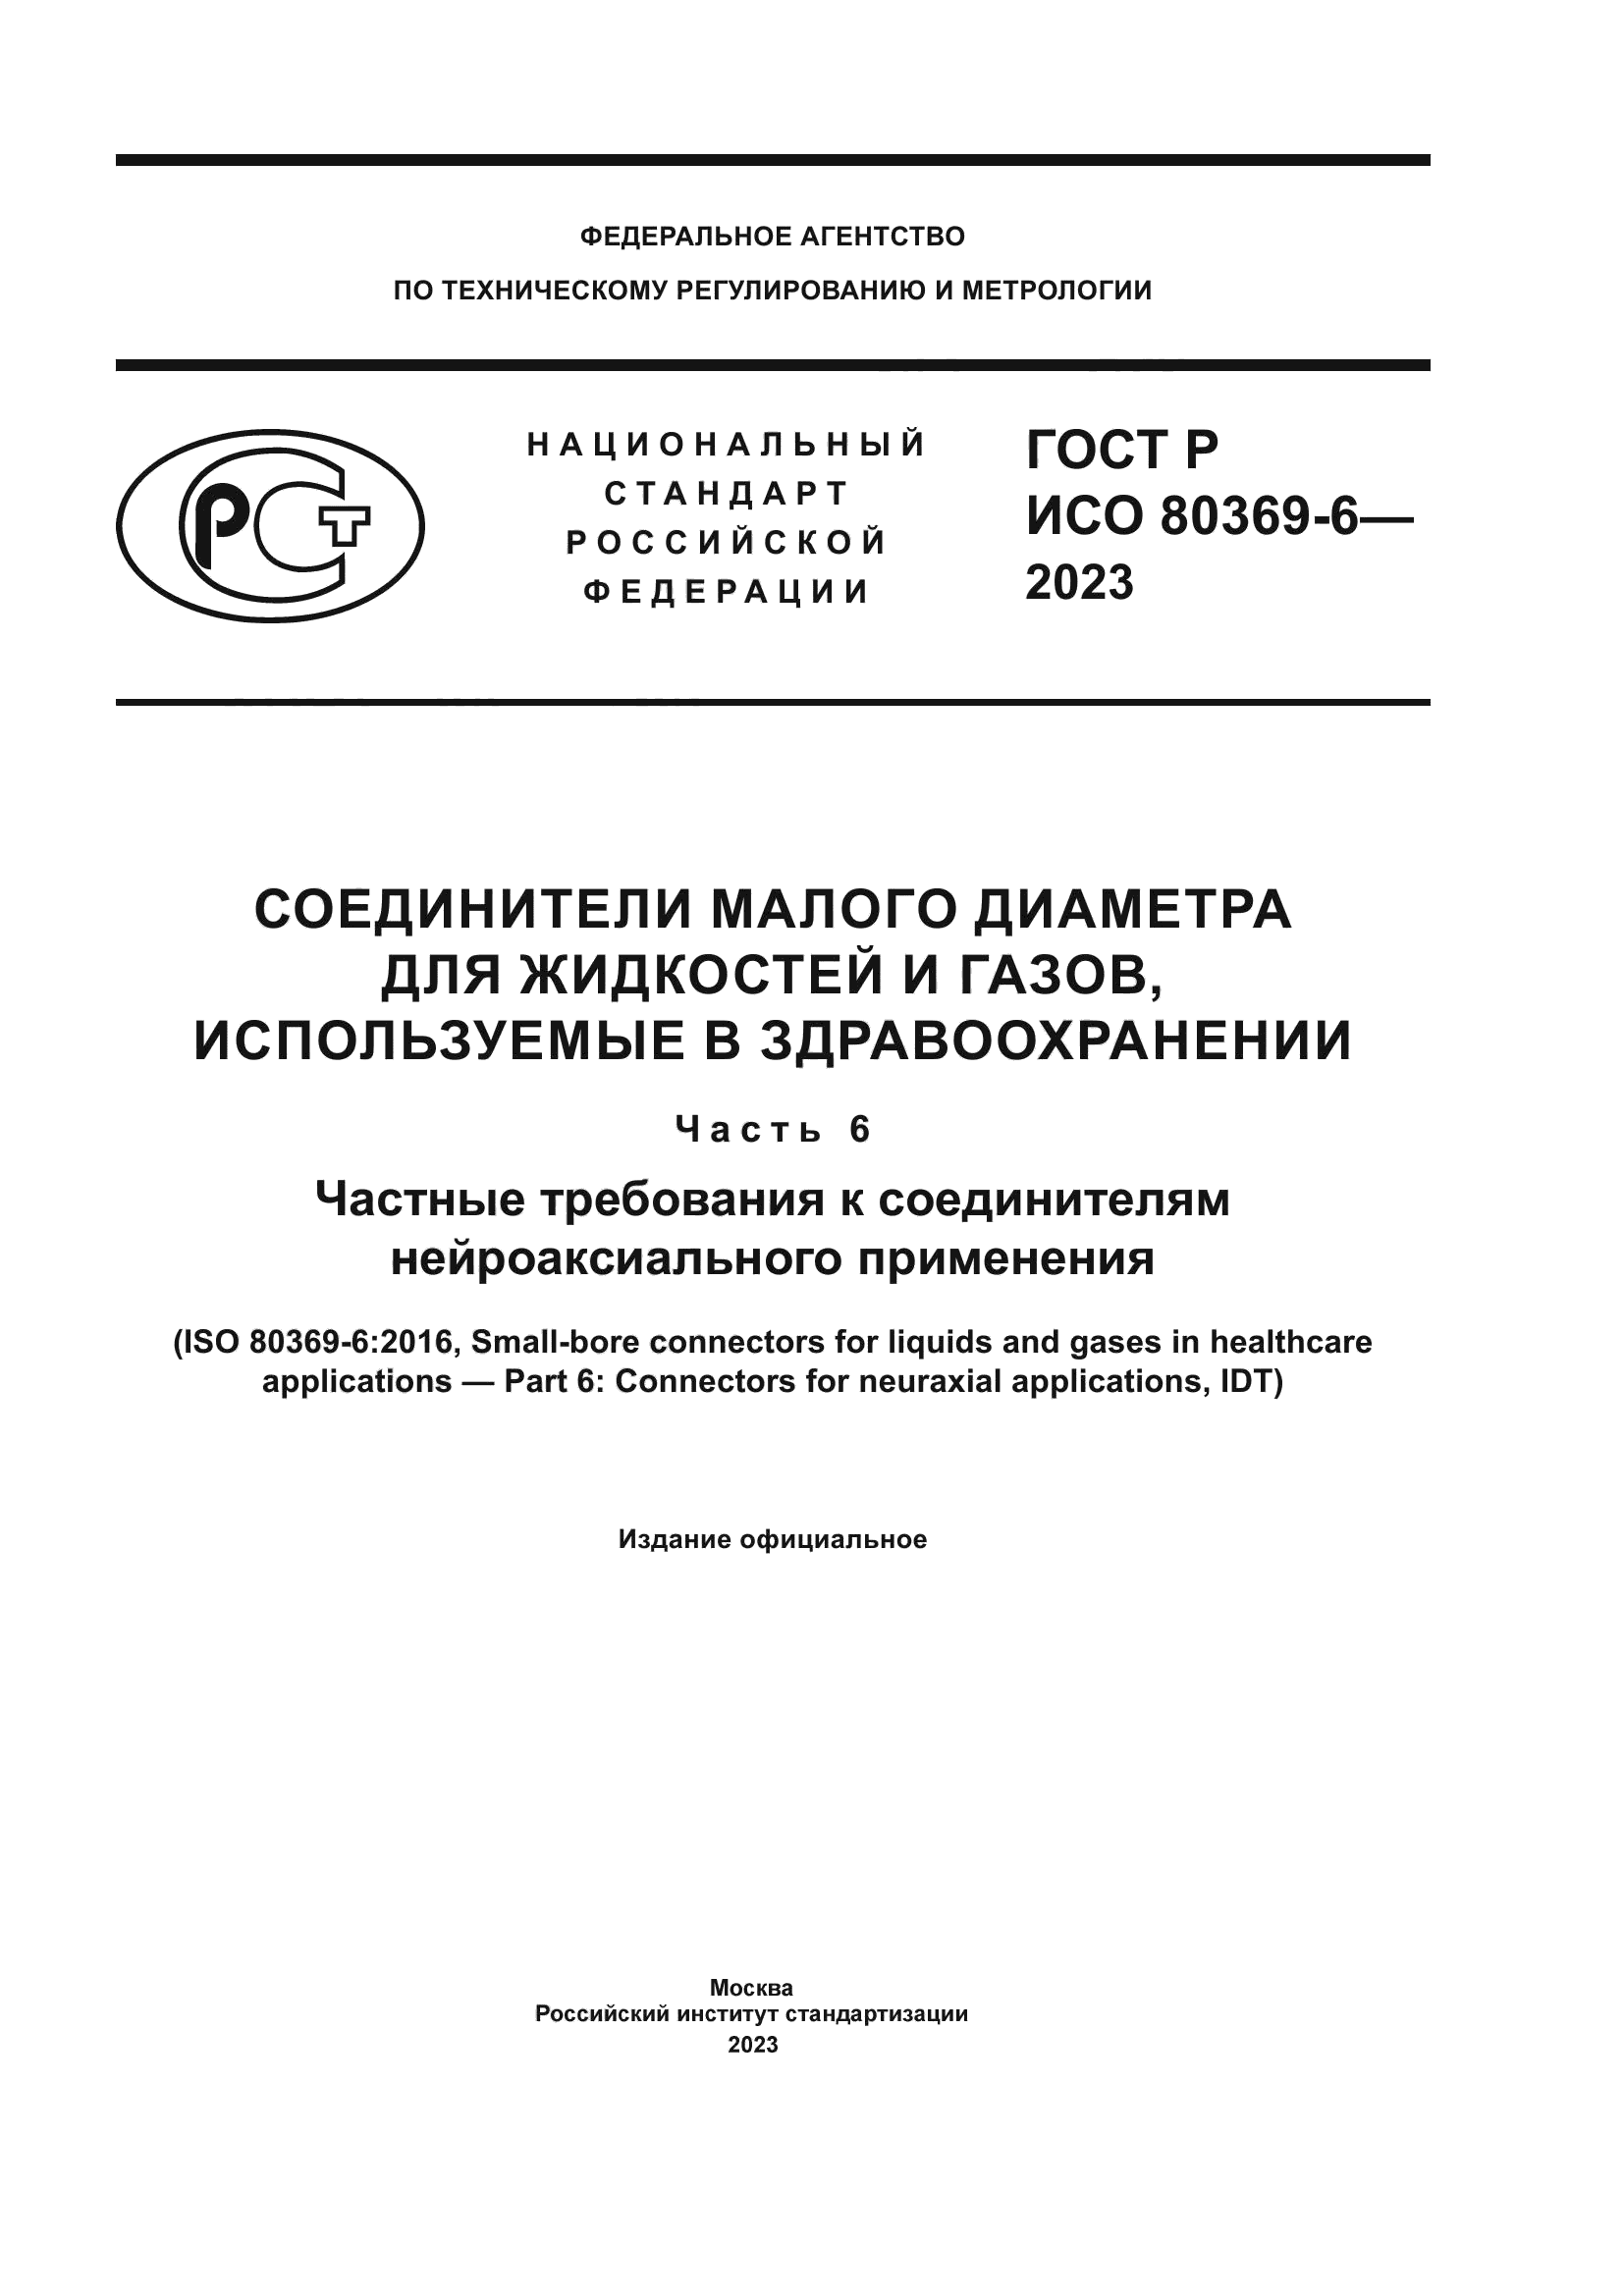 ГОСТ Р ИСО 80369-6-2023